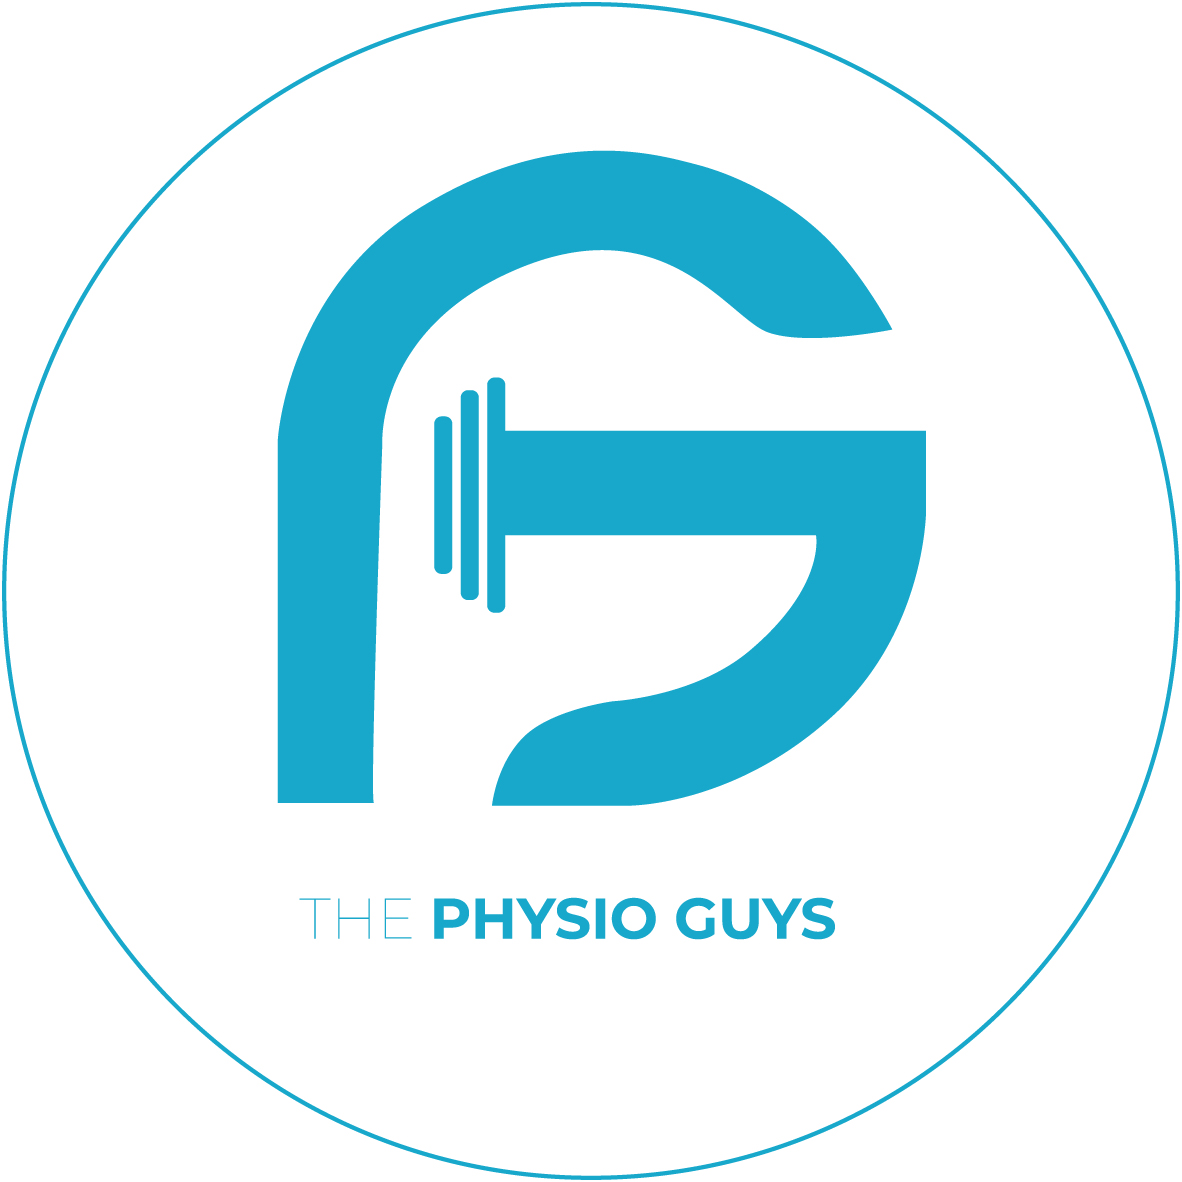 The Physio Guys